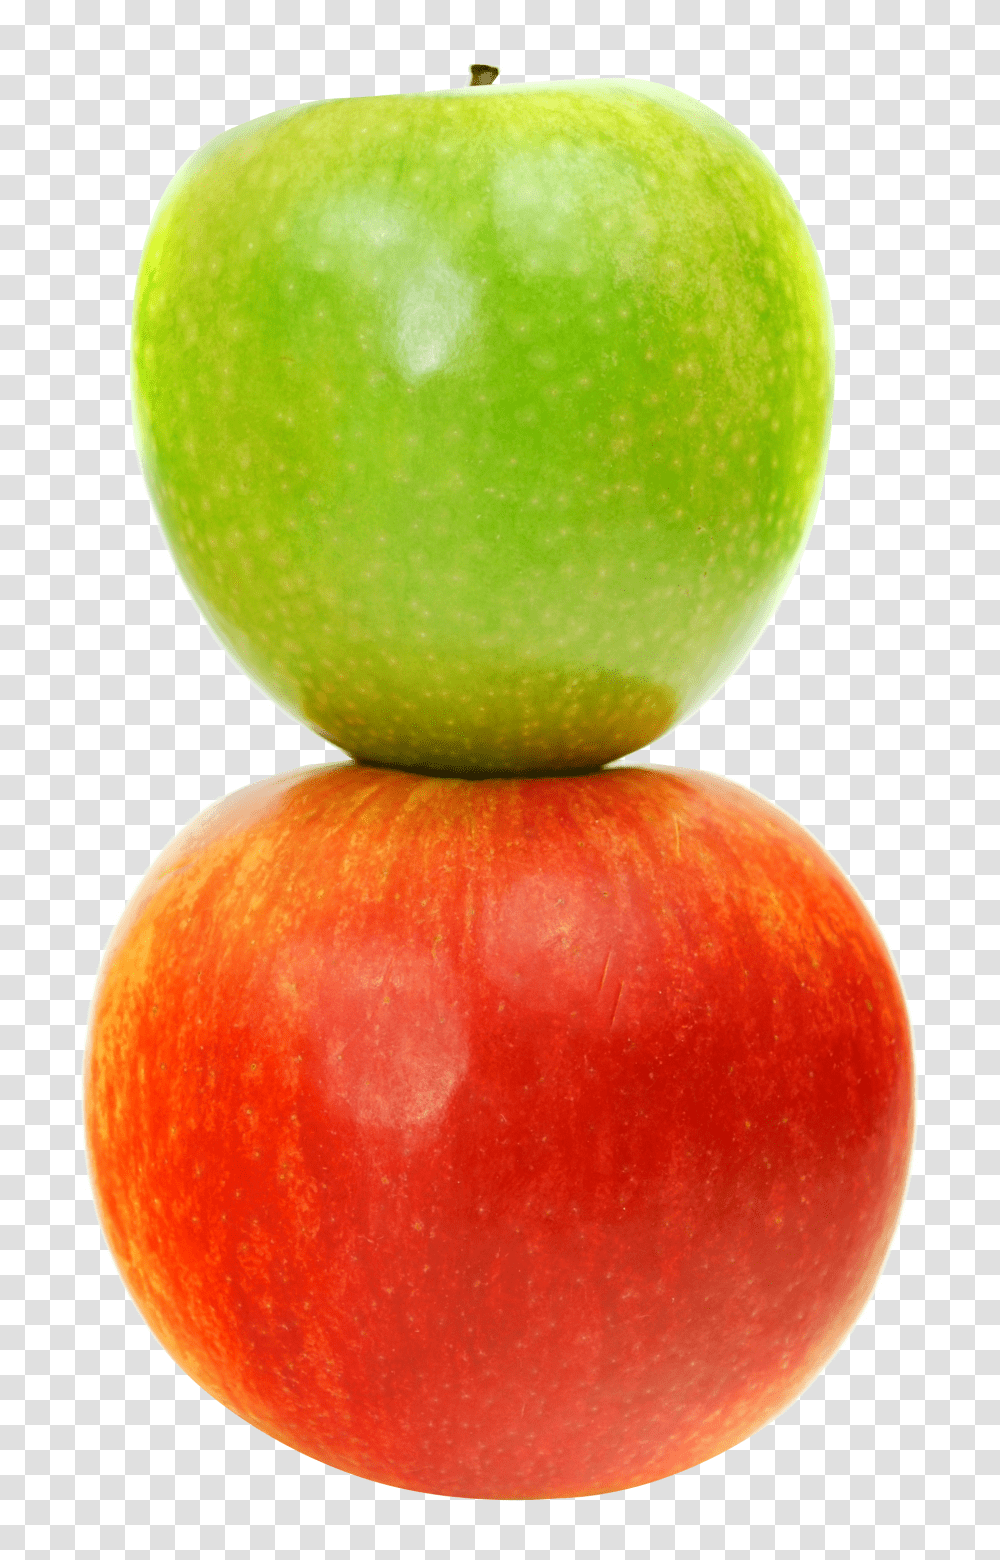 Double Apple, Fruit, Plant, Food Transparent Png